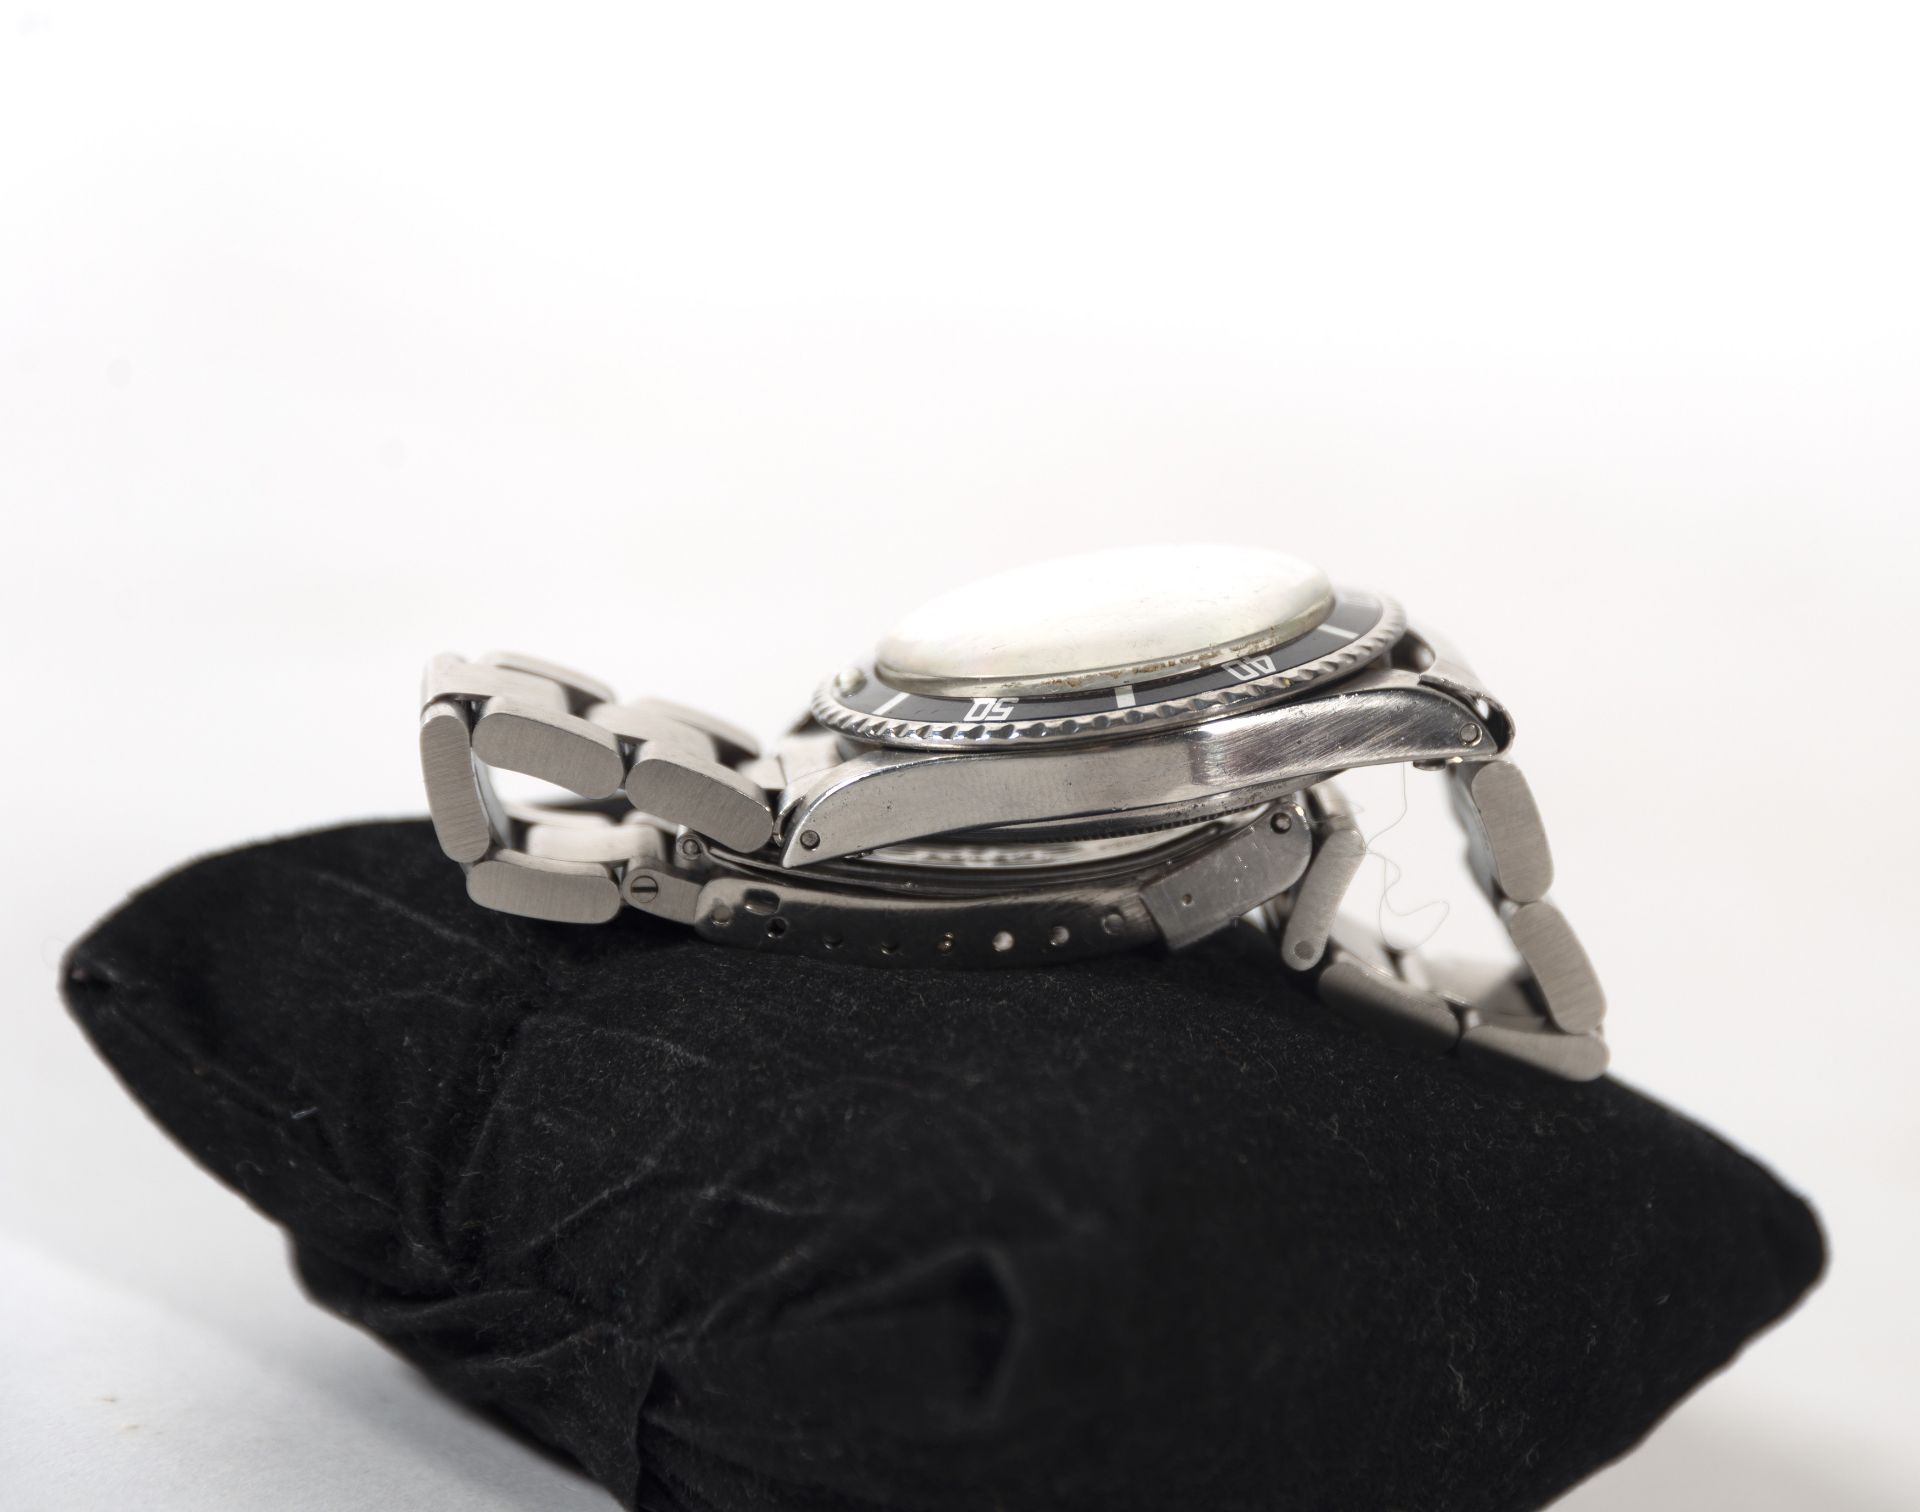 Elegant Rolex Submariner watch model 5513 vintage in steel, 1960s - Bild 7 aus 9